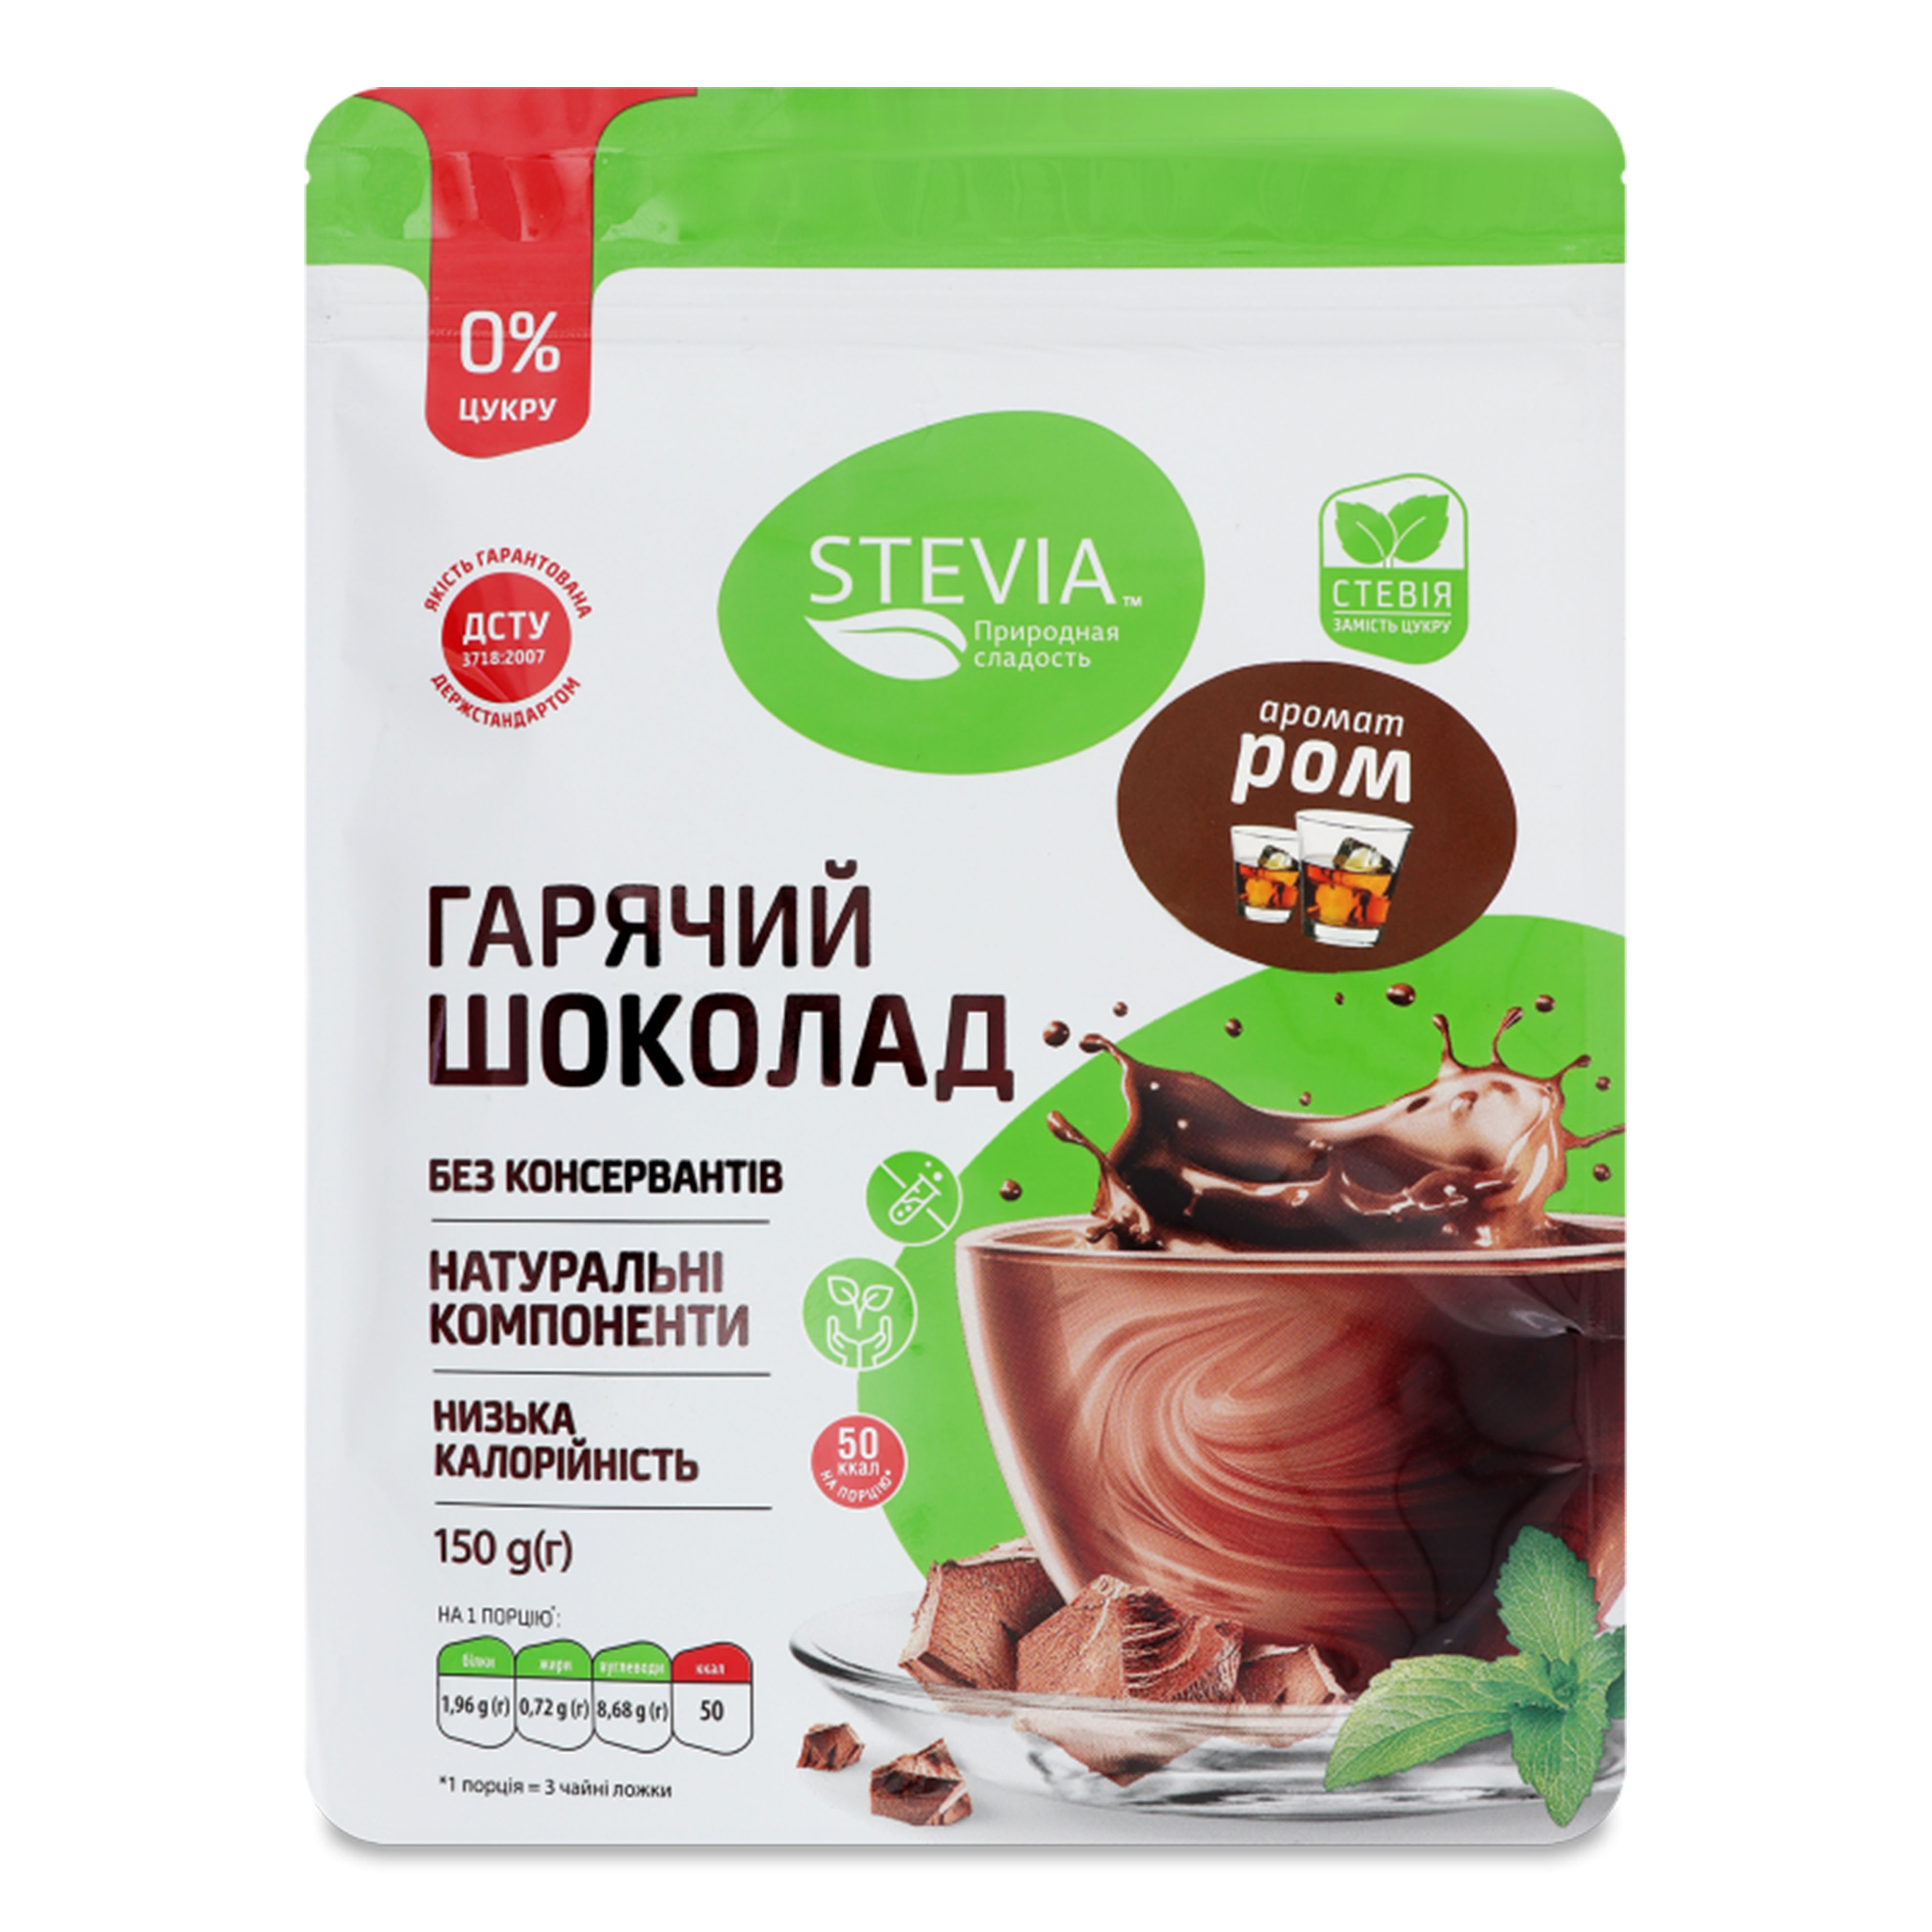 Шоколад гарячий Stevia зі смаком рому, 150 г. (350136)
 large popup